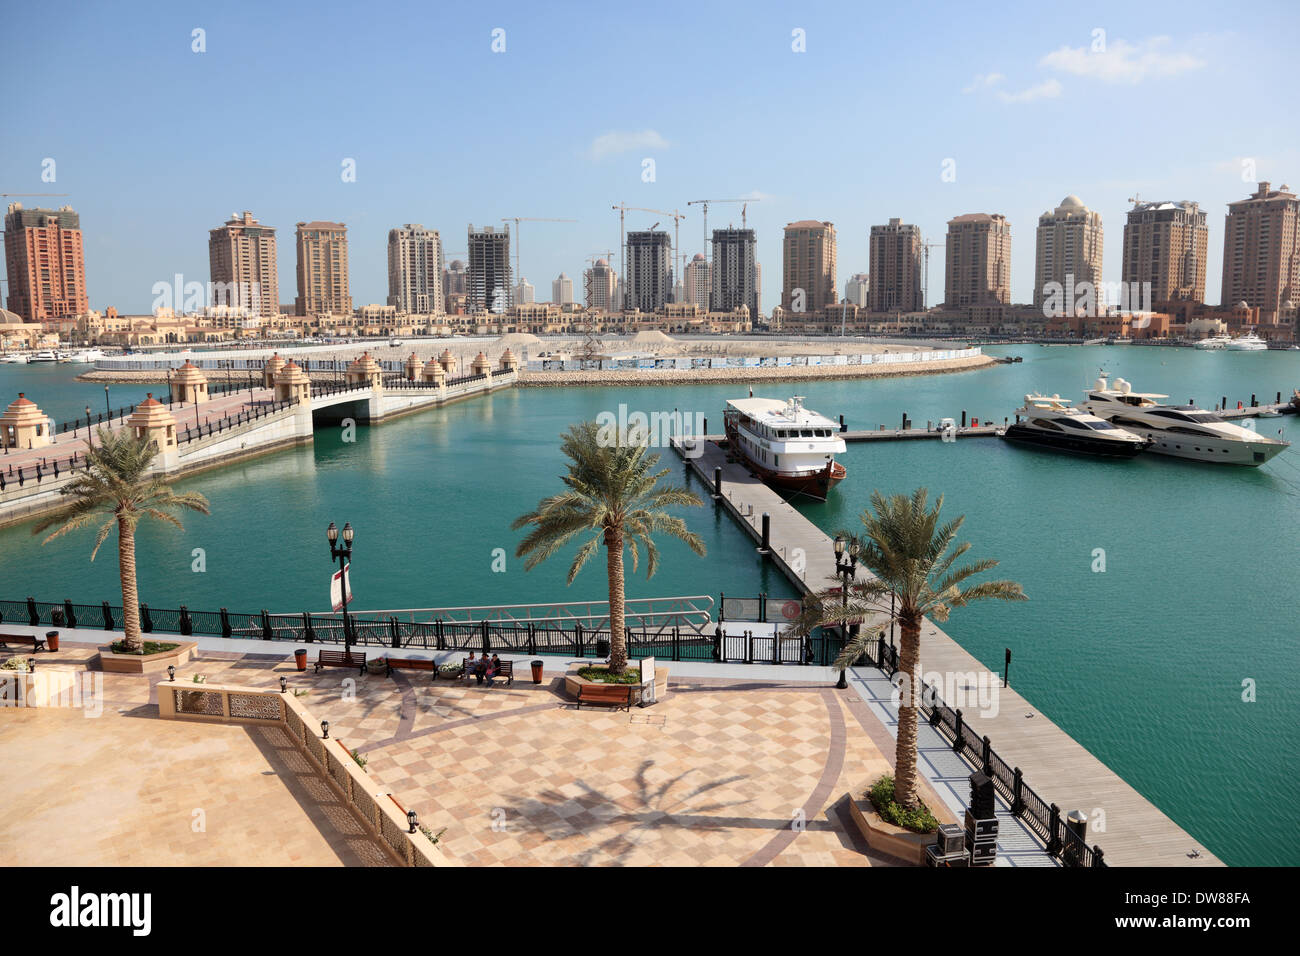 Marina de luxe à Porto Saoudite. Doha, au Qatar, au Moyen-Orient Banque D'Images